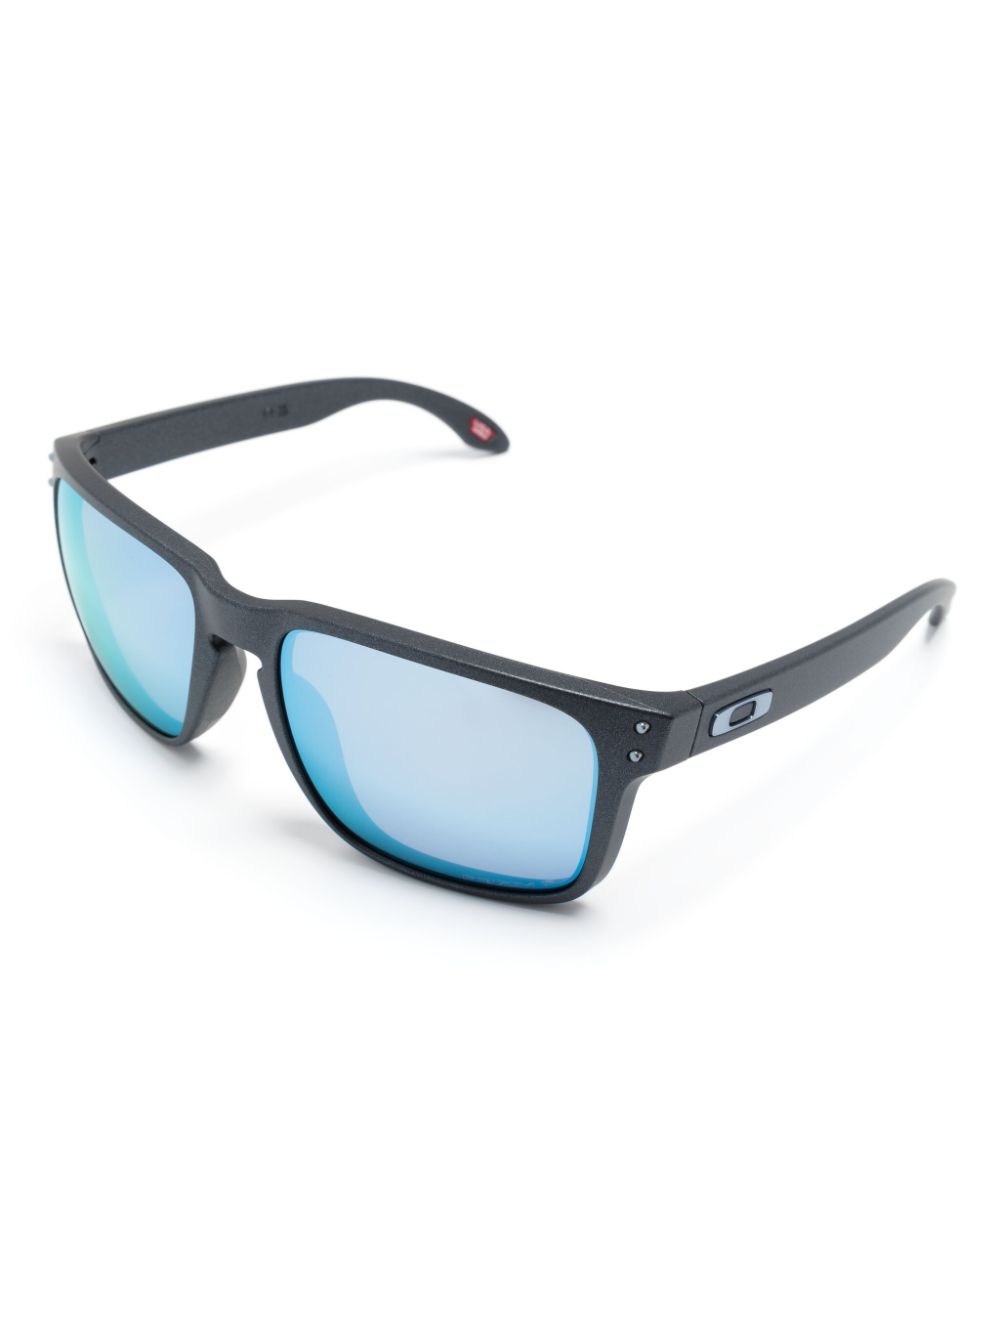 Holbrook XL square-frame sunglasses<BR/><BR/><BR/>